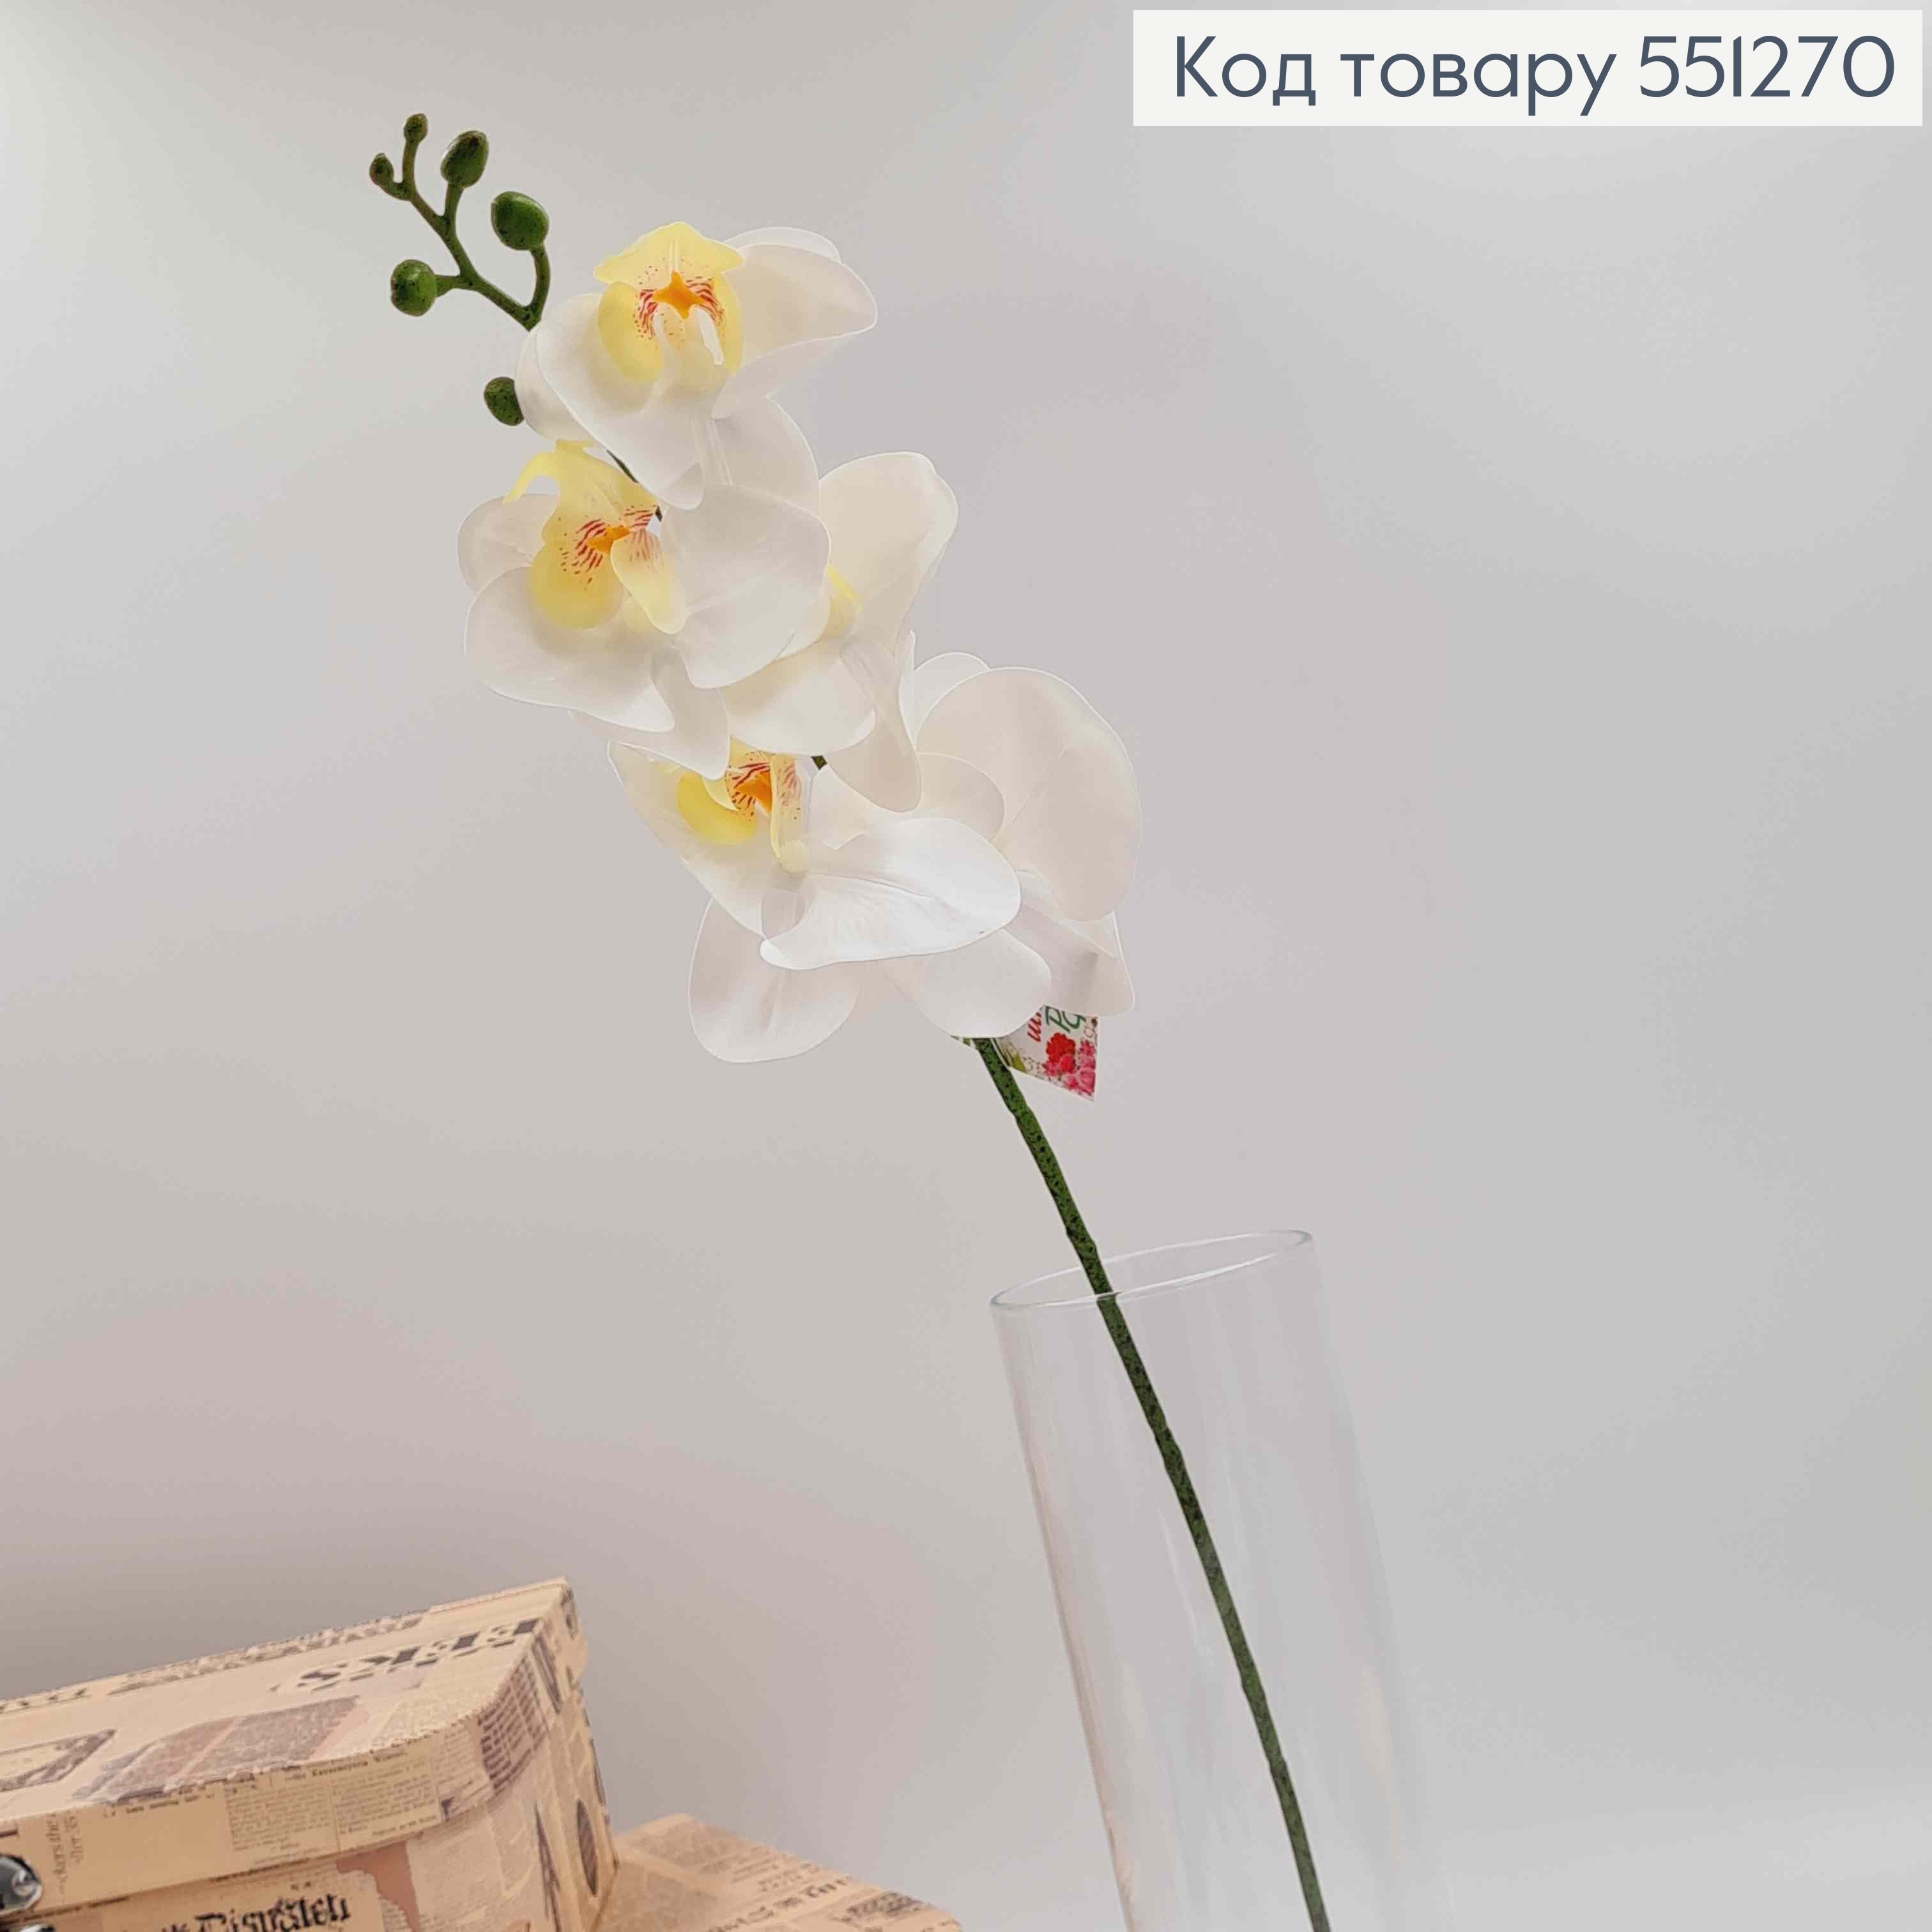 Штучна гілочка БІЛА орхідея на 5 квіточок , висотою 55см 551270 фото 2